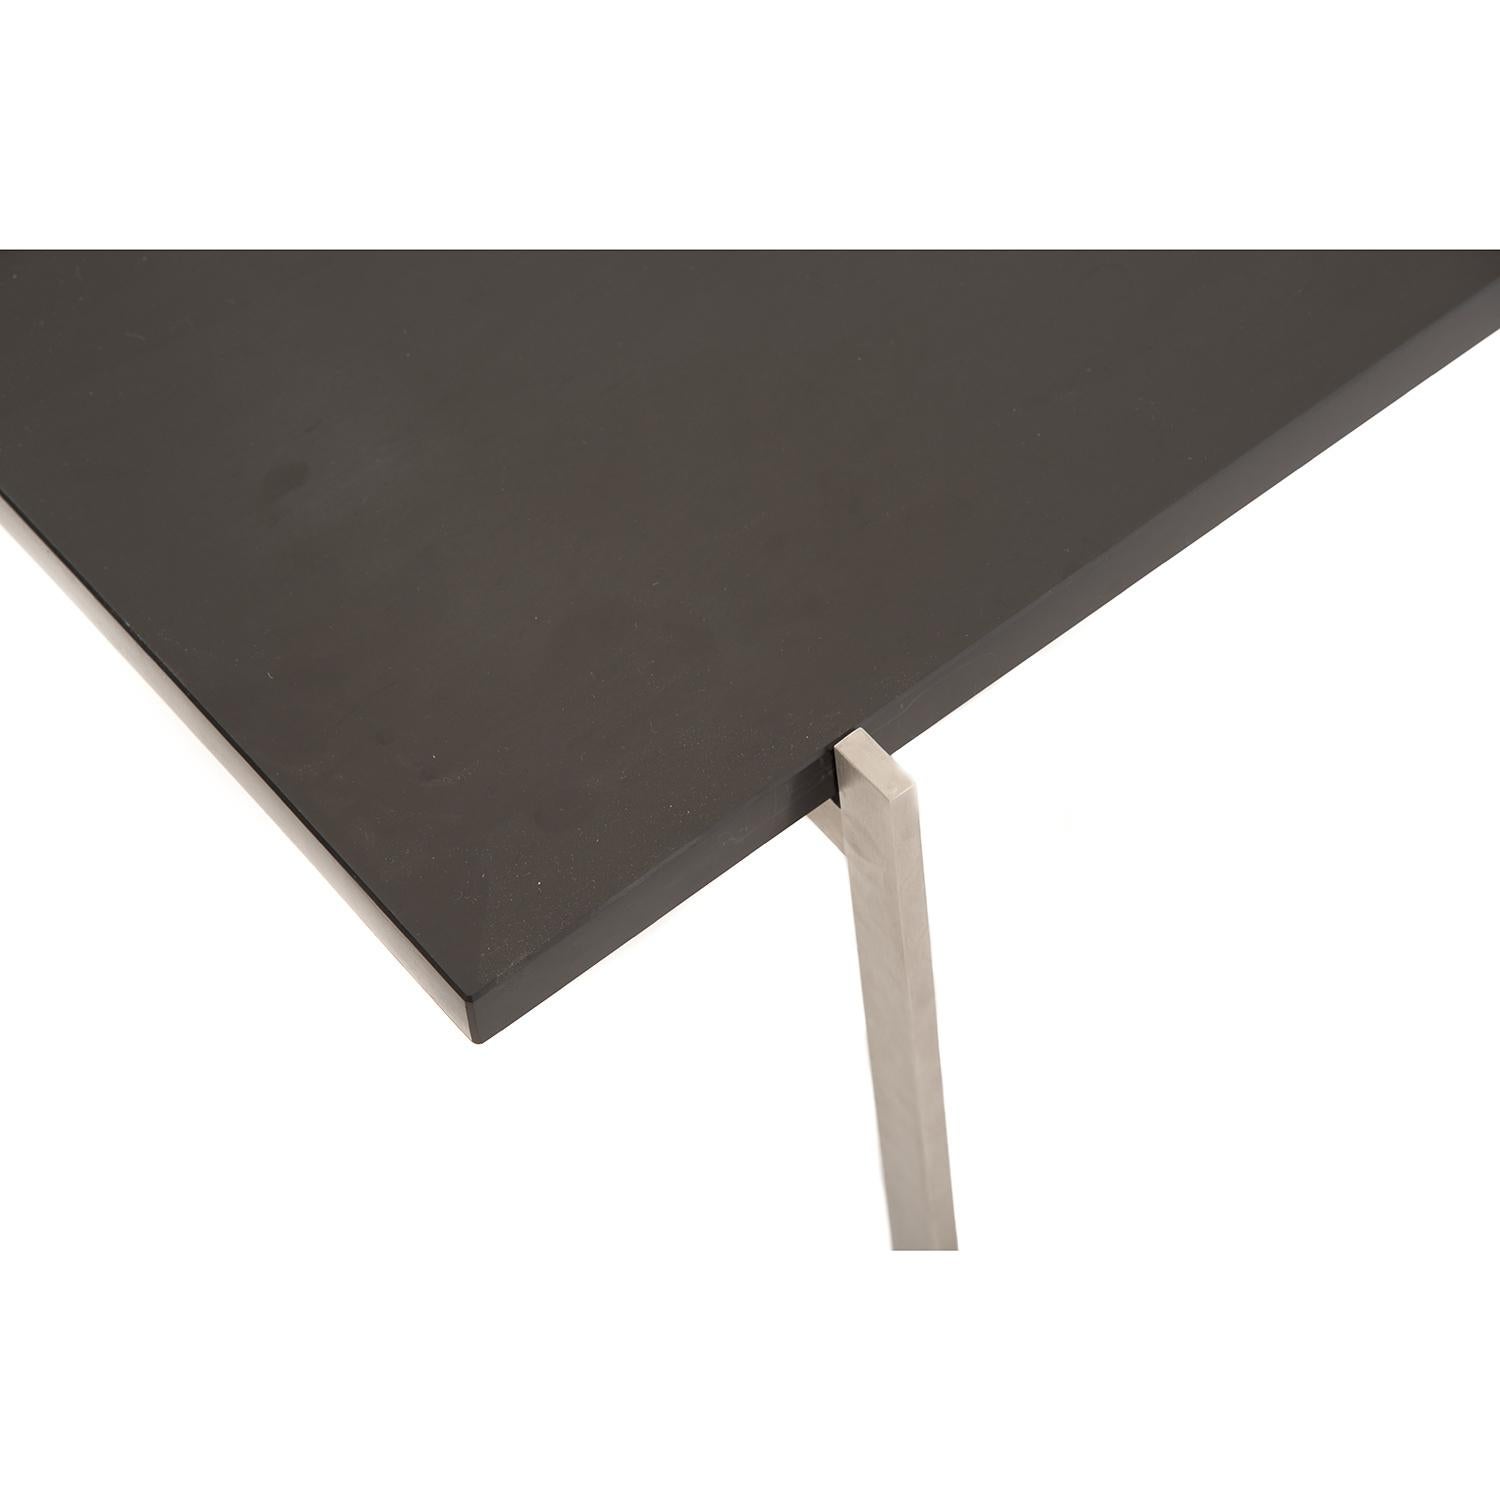 Scandinavian Modern  PK61 Slate/Stainless Steel Table by Poul Kjerholm for Fritz Hansen For Sale